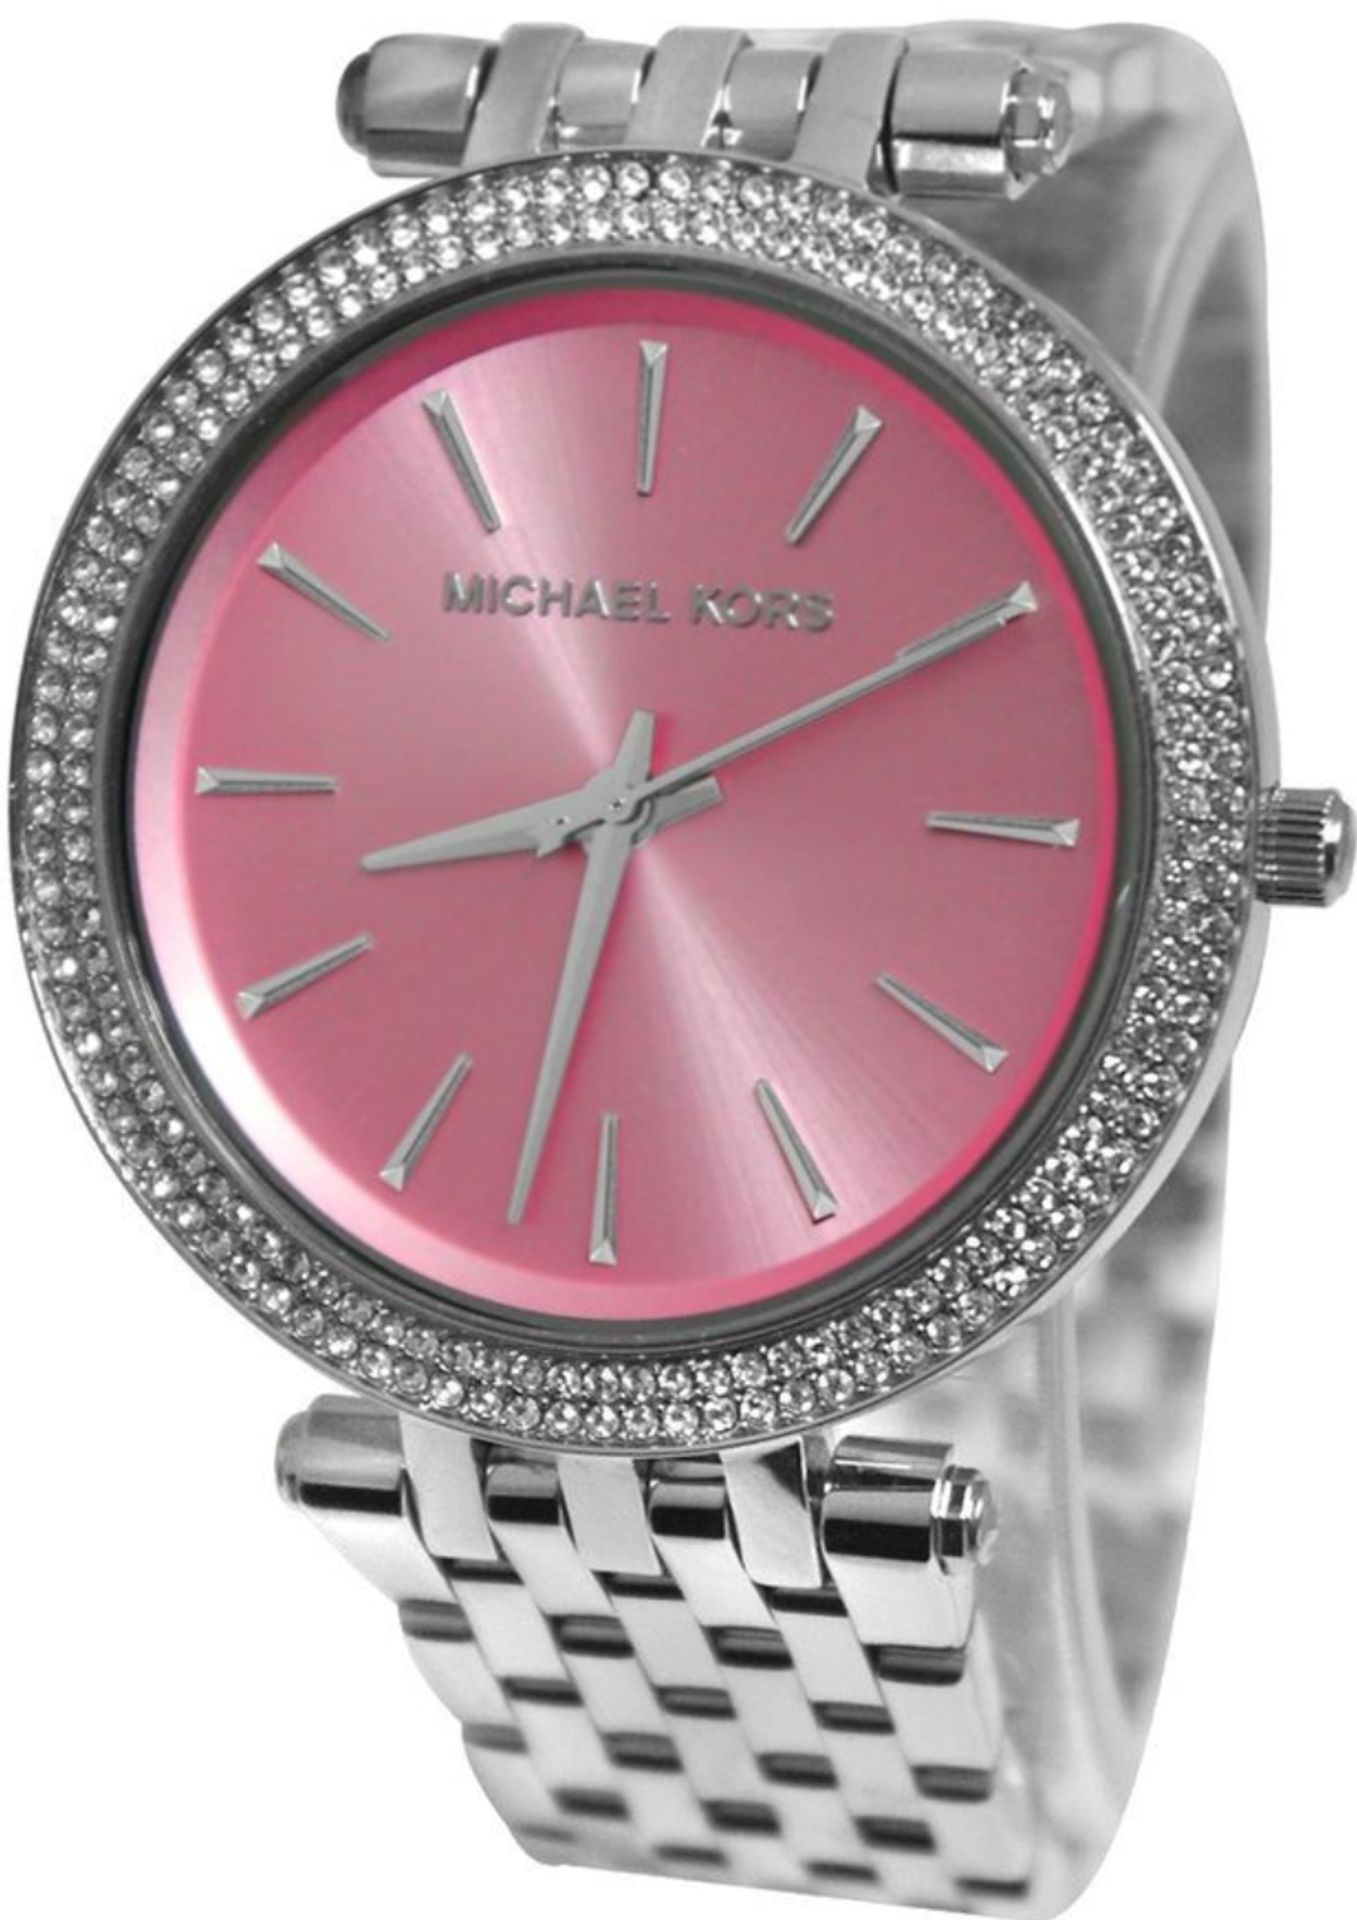 MICHAEL KORS MK3352 Darci Pink & Silver Stainless Steel Ladies Watch - Image 7 of 8